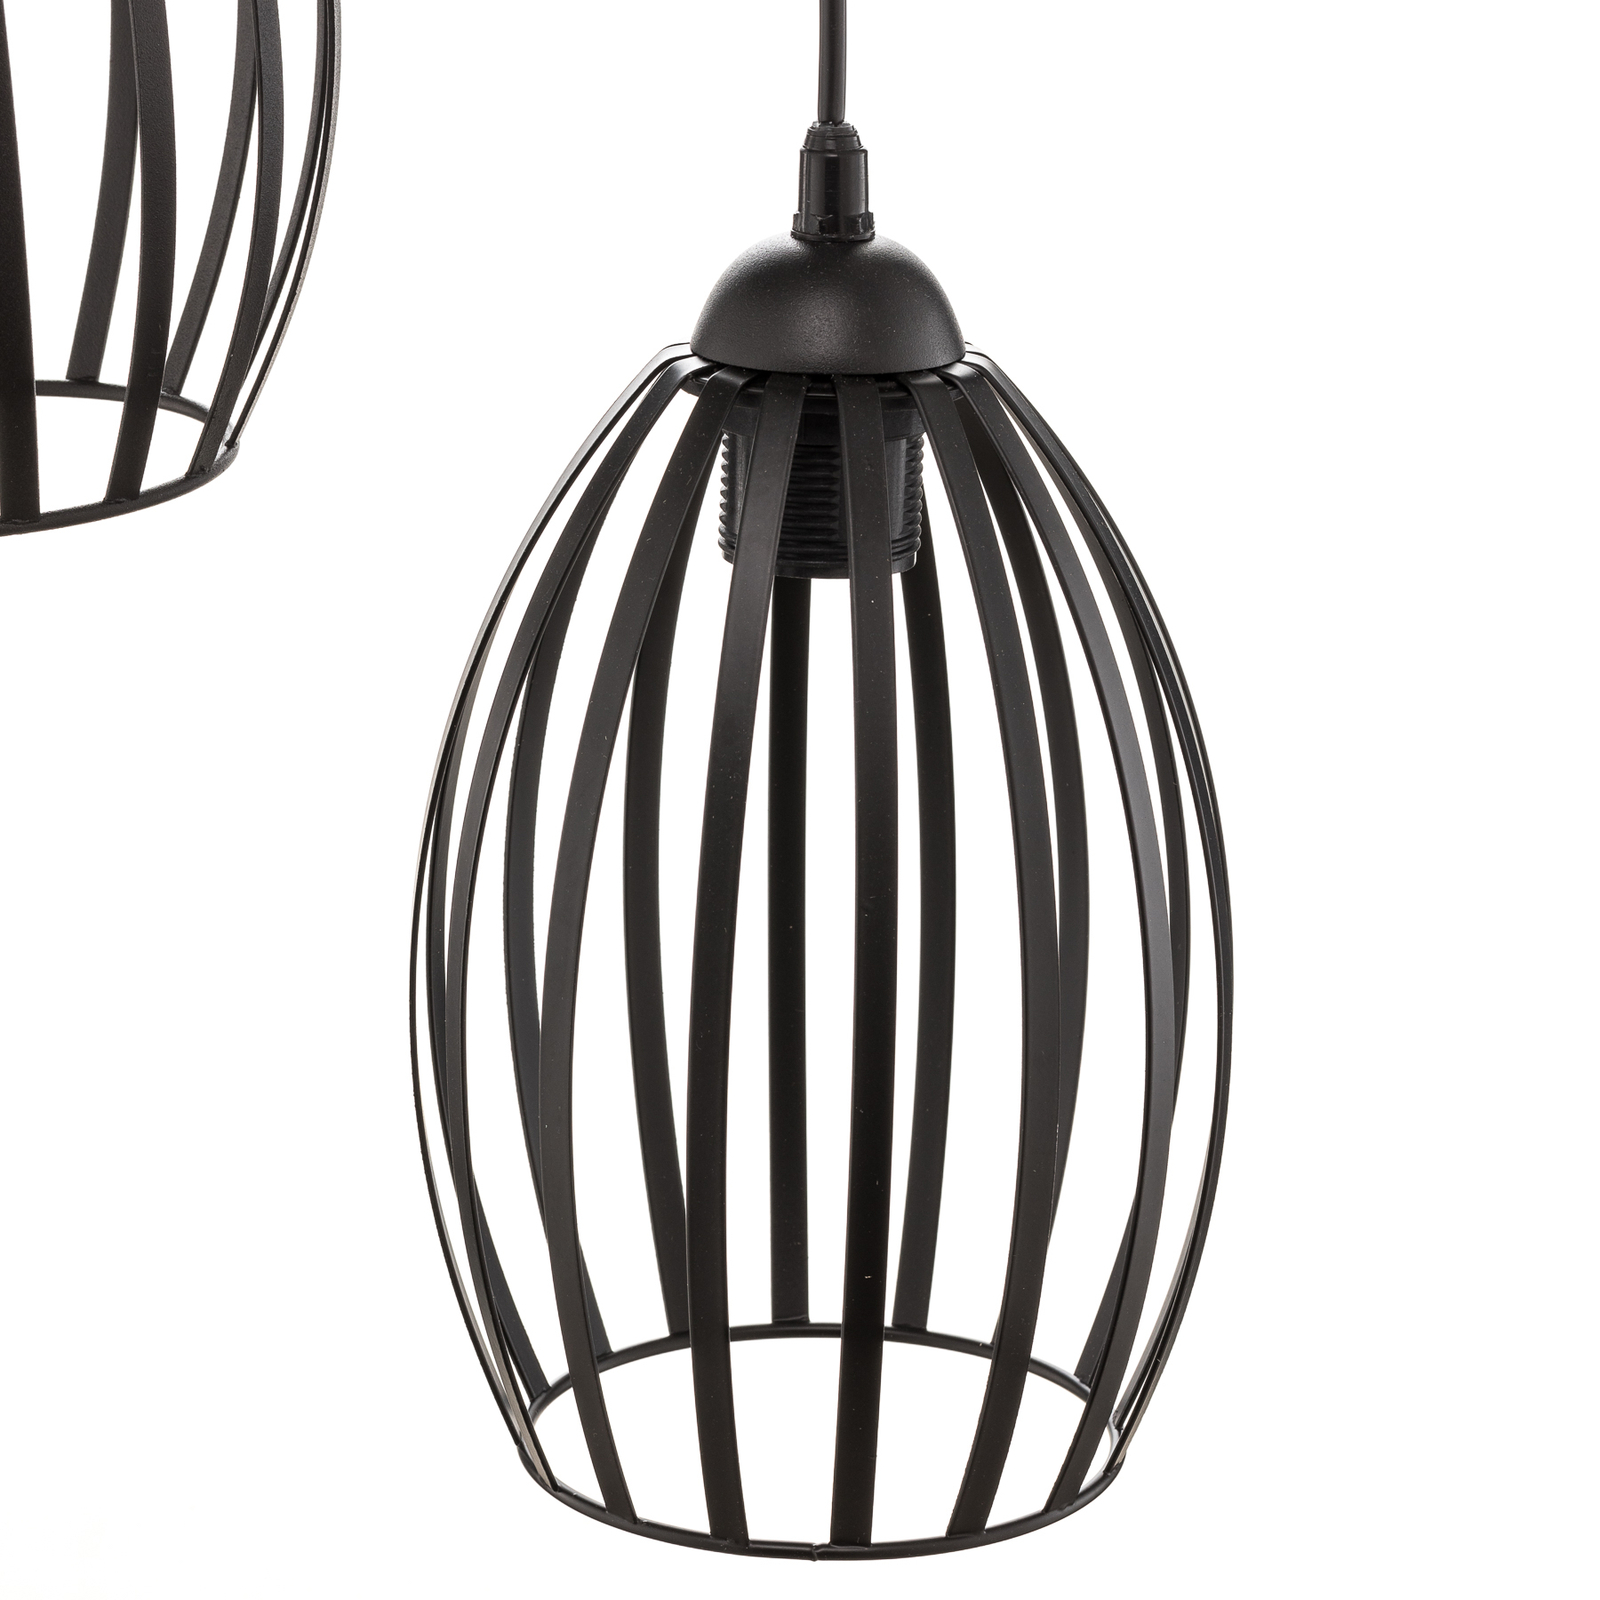 Dali pendant light in black, 3-bulb round